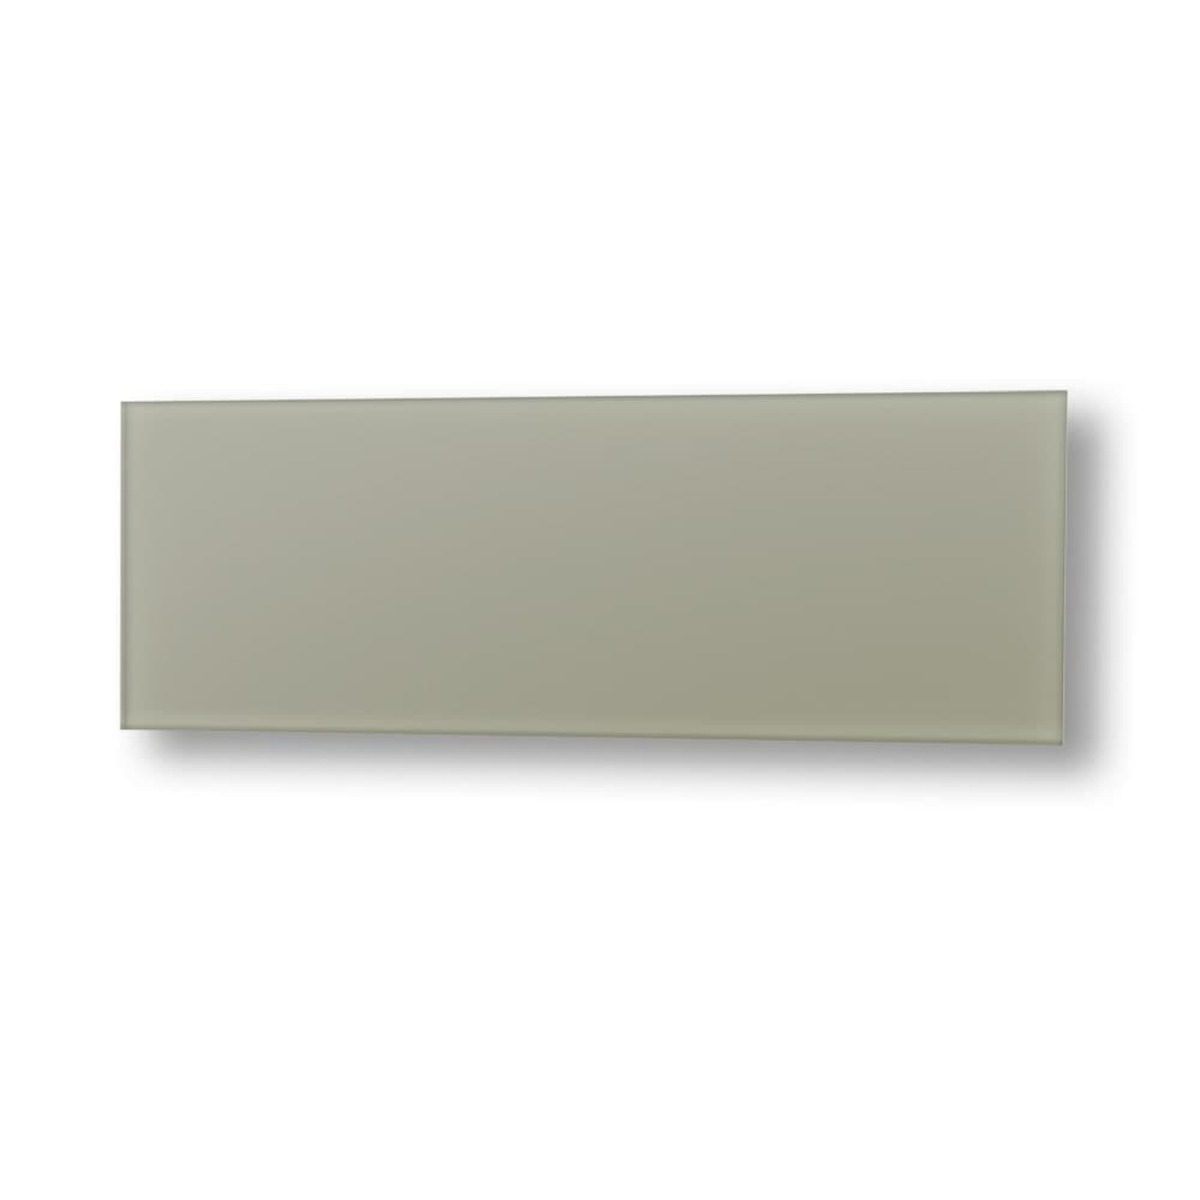 Topný panel Fenix GS+ 125x65 cm skleněný světle šedá 11V5437787 Fenix